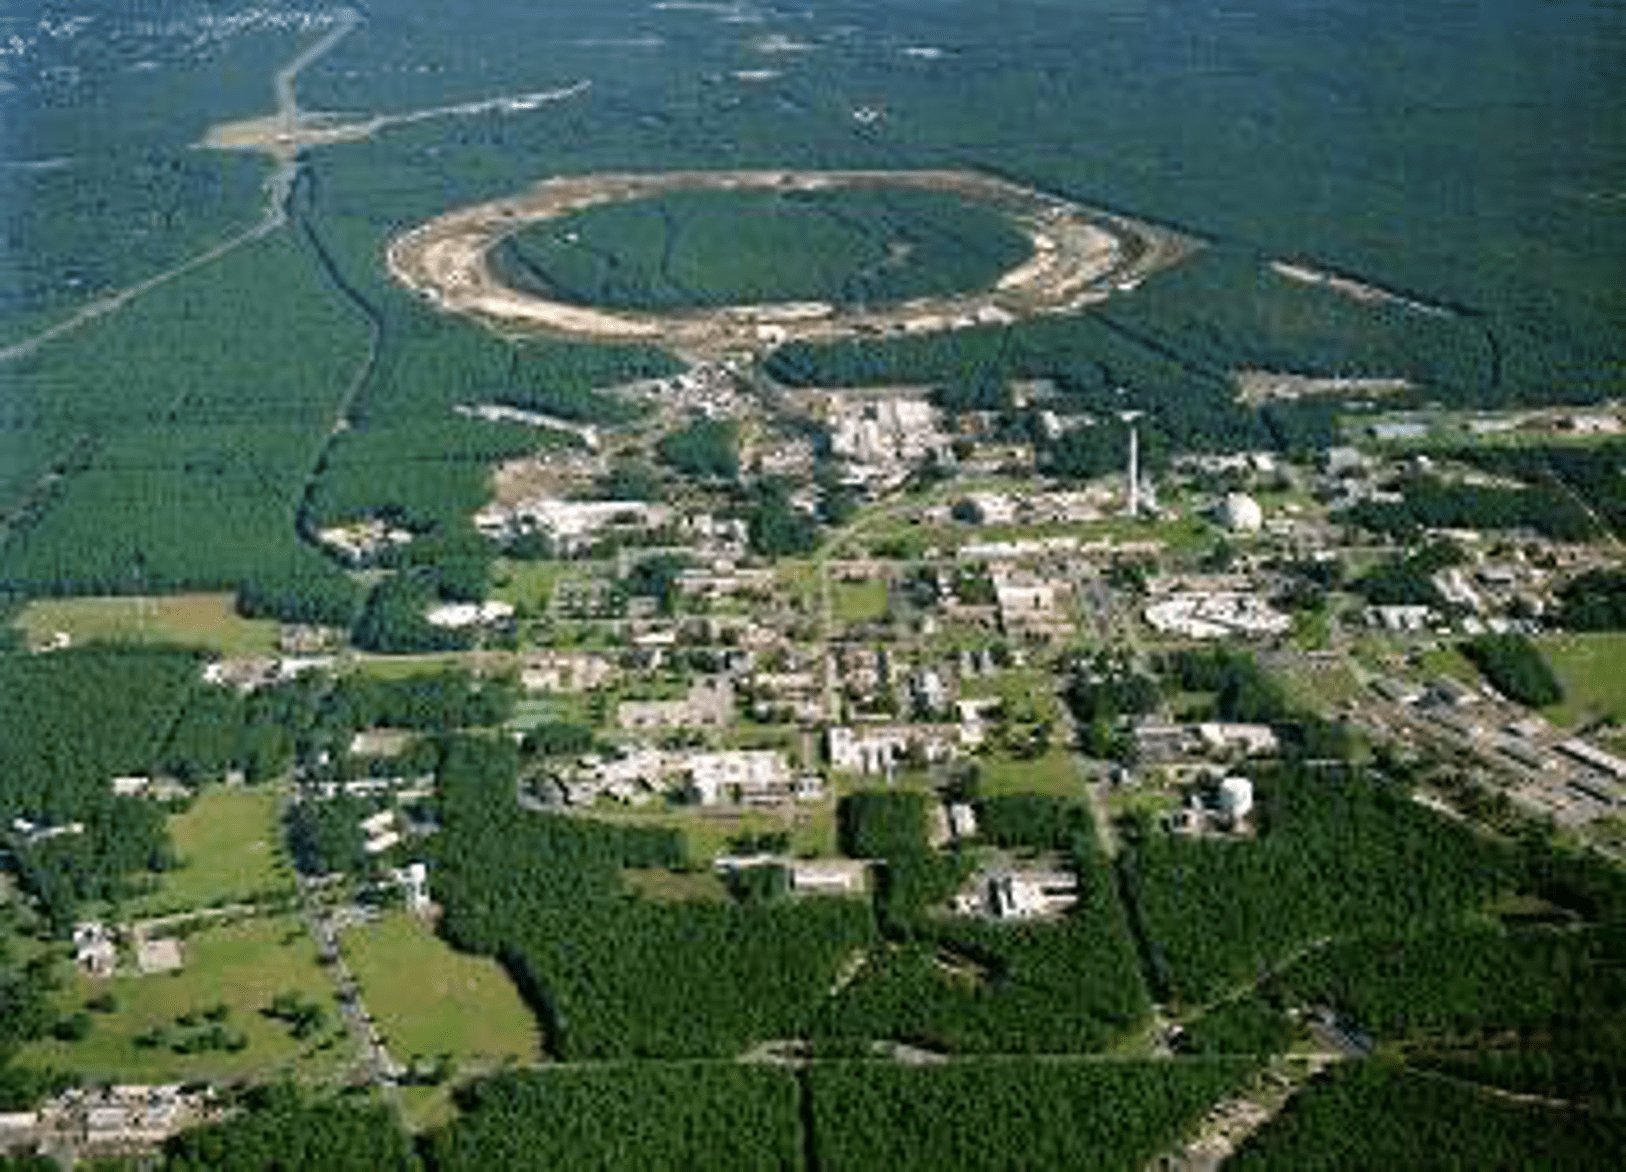 Aerial image of NSRL at BNL